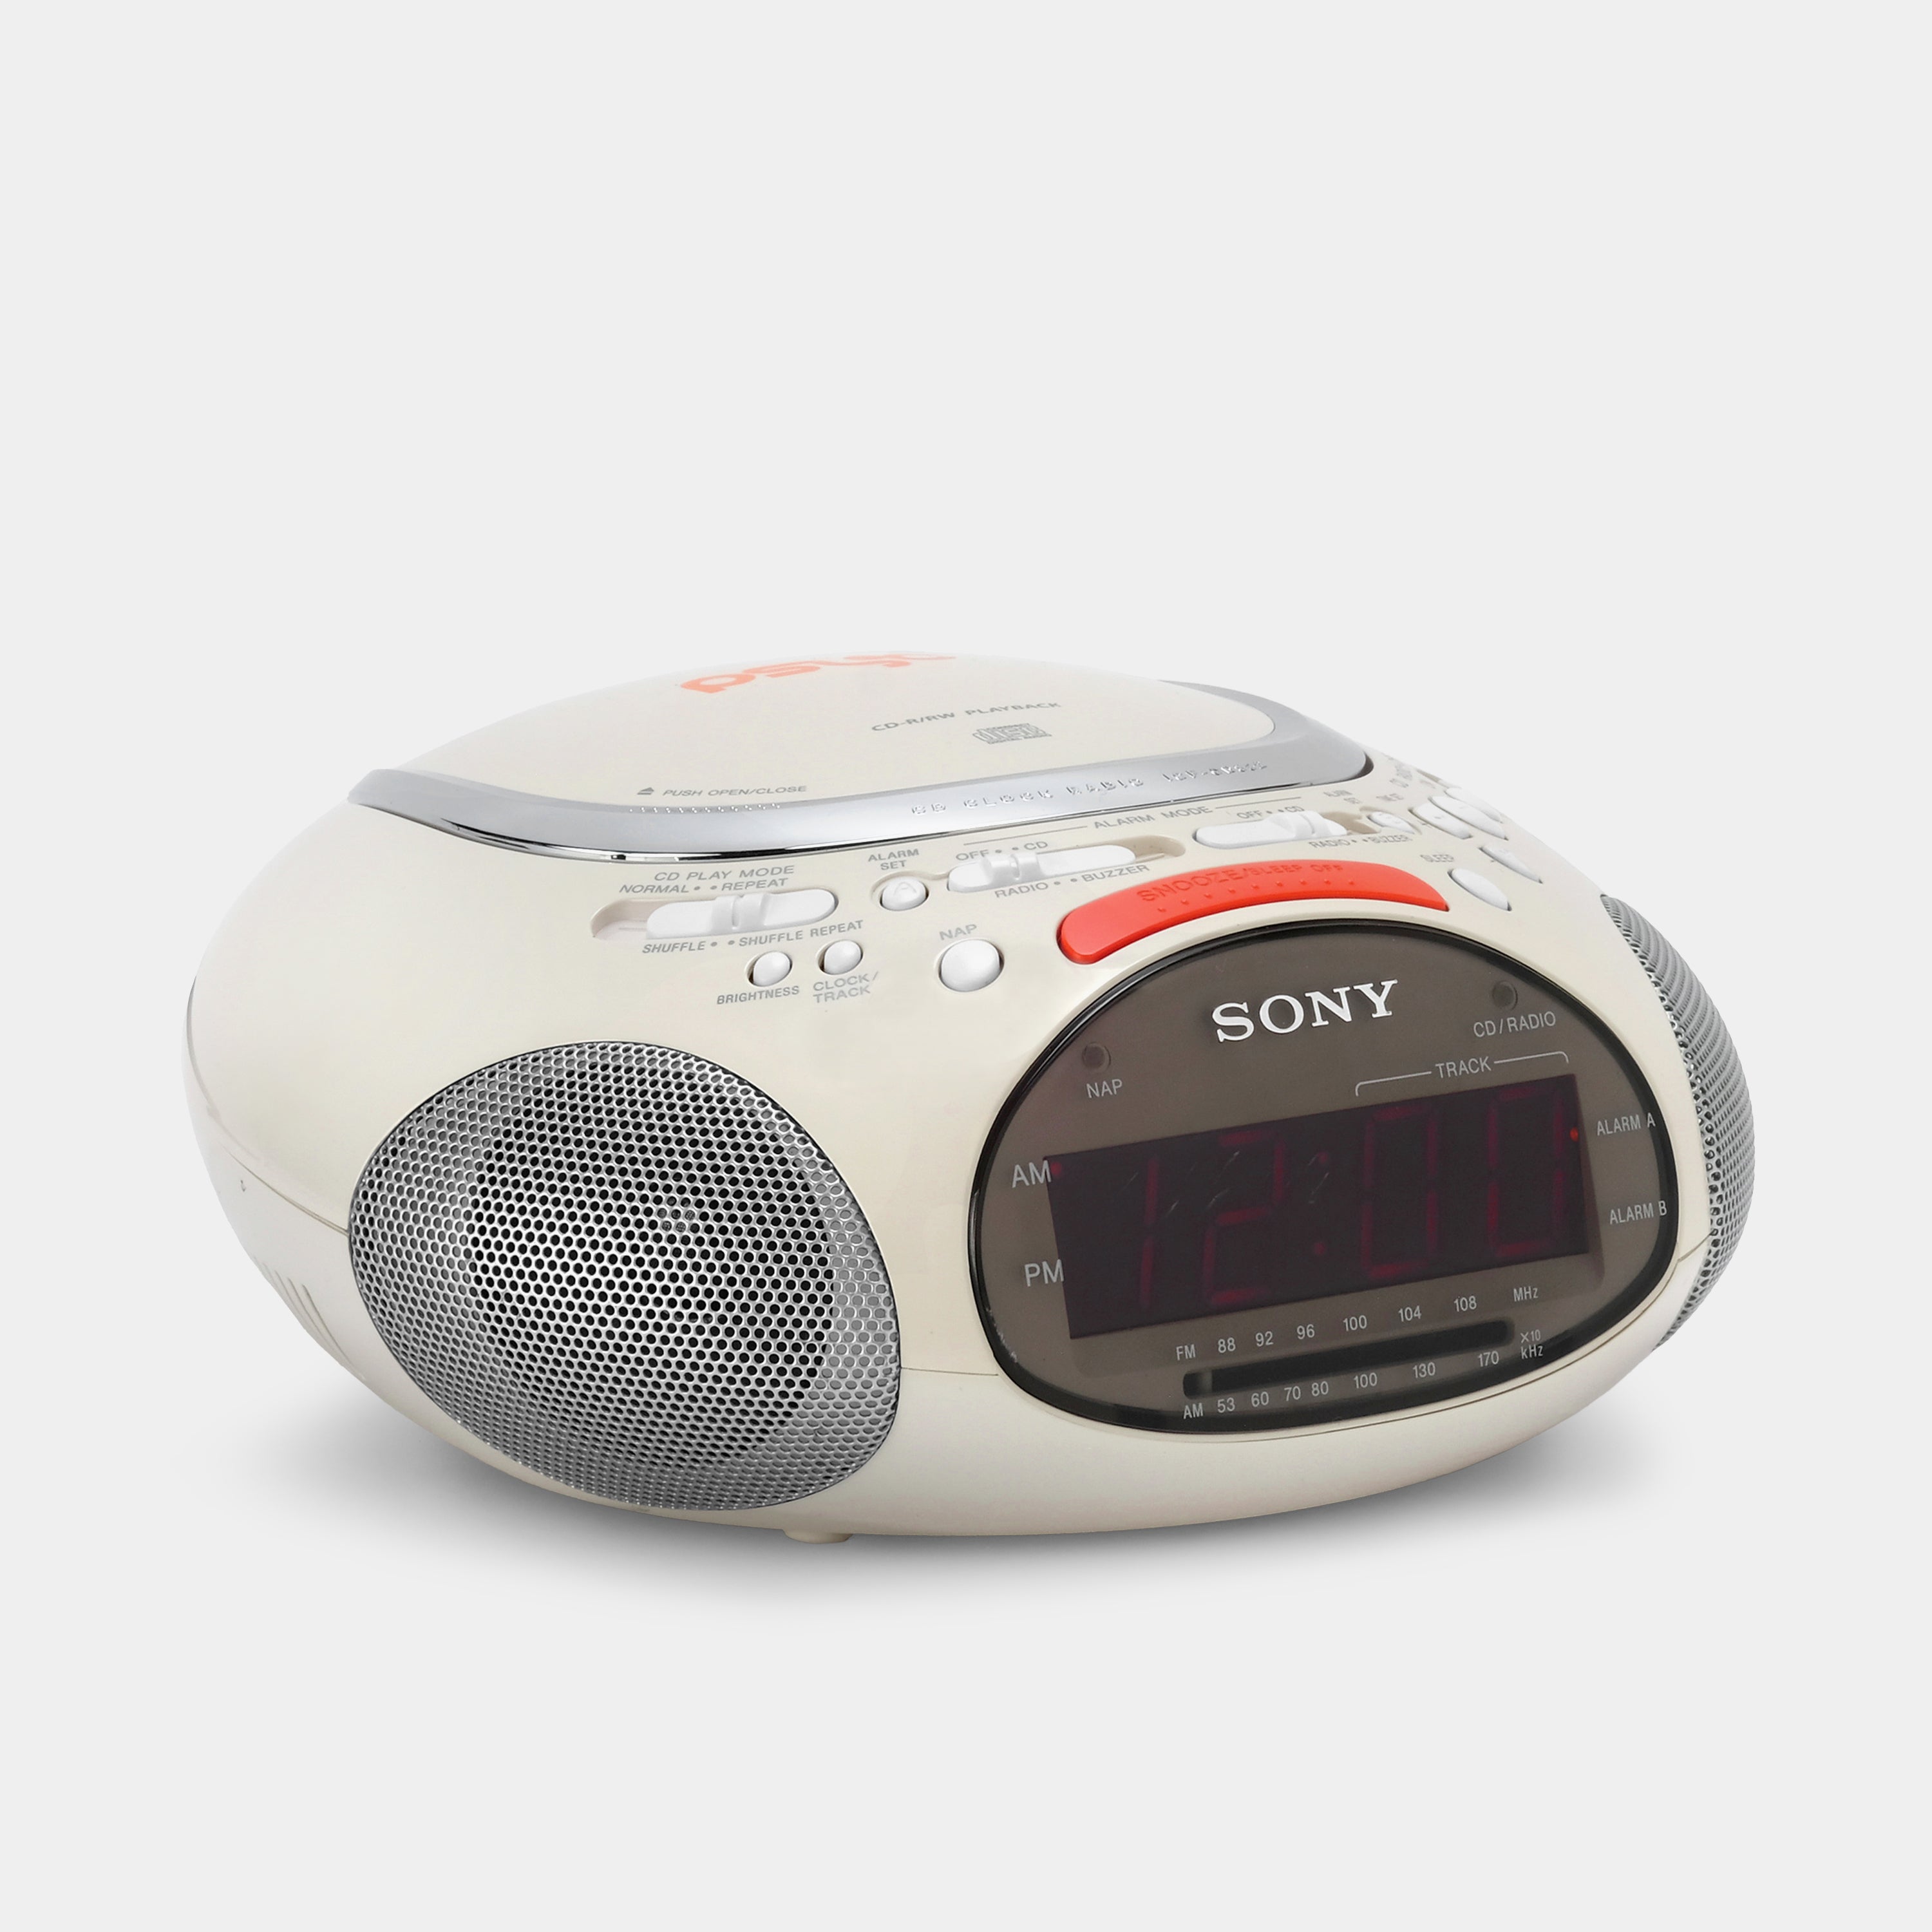 Sony Psyc ICF-CD832 White FM/AM CD Clock Radio